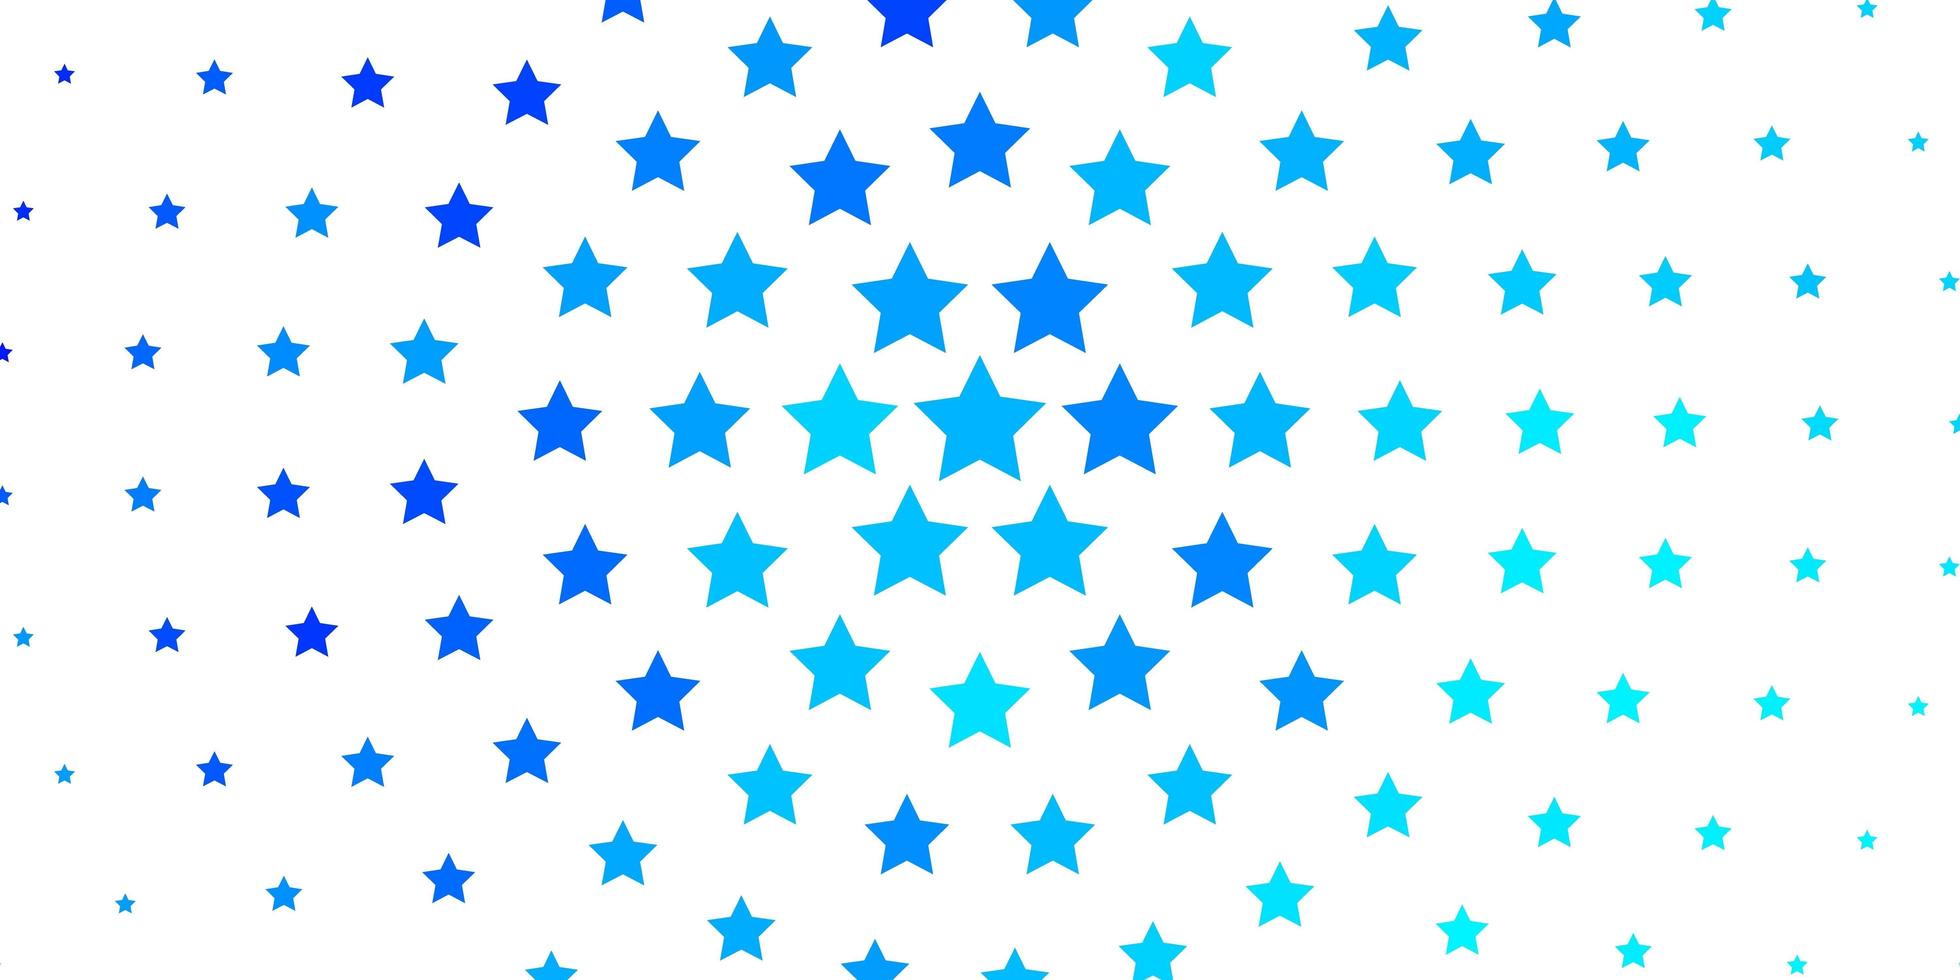 lichtblauwe vectortextuur met mooie sterren. decoratieve illustratie met sterren op abstracte sjabloon. patroon voor websites, bestemmingspagina's. vector